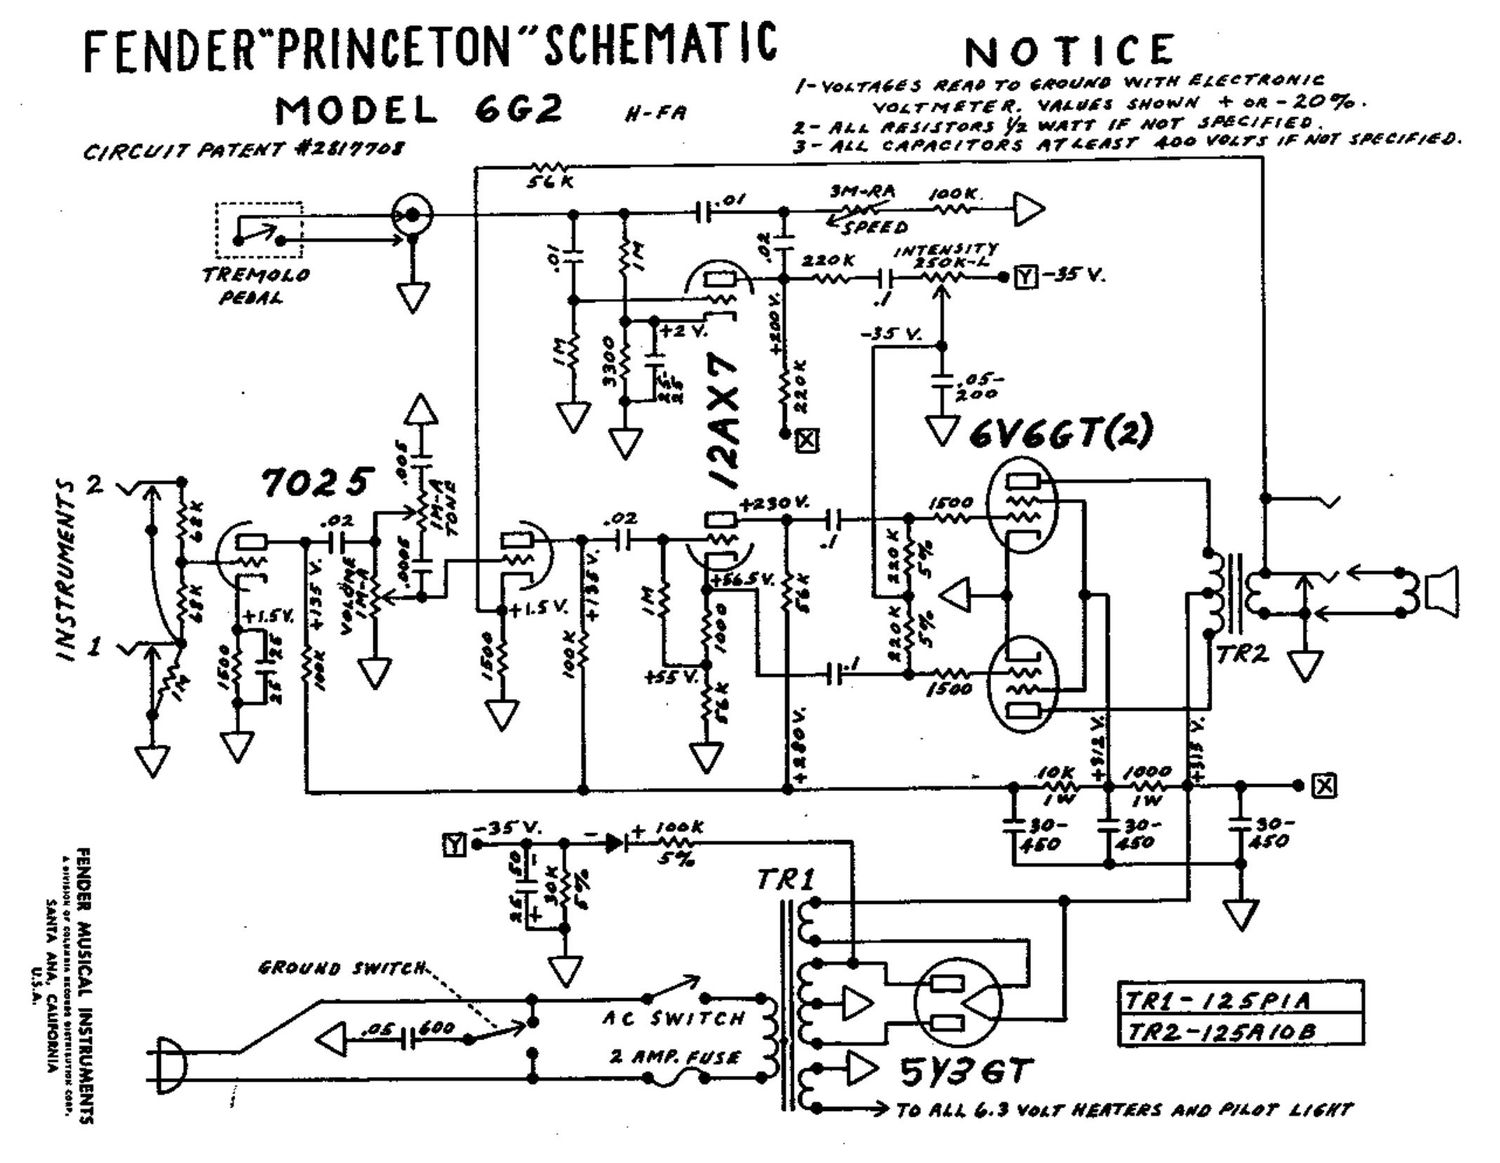 fender princeton 6g2 schematic